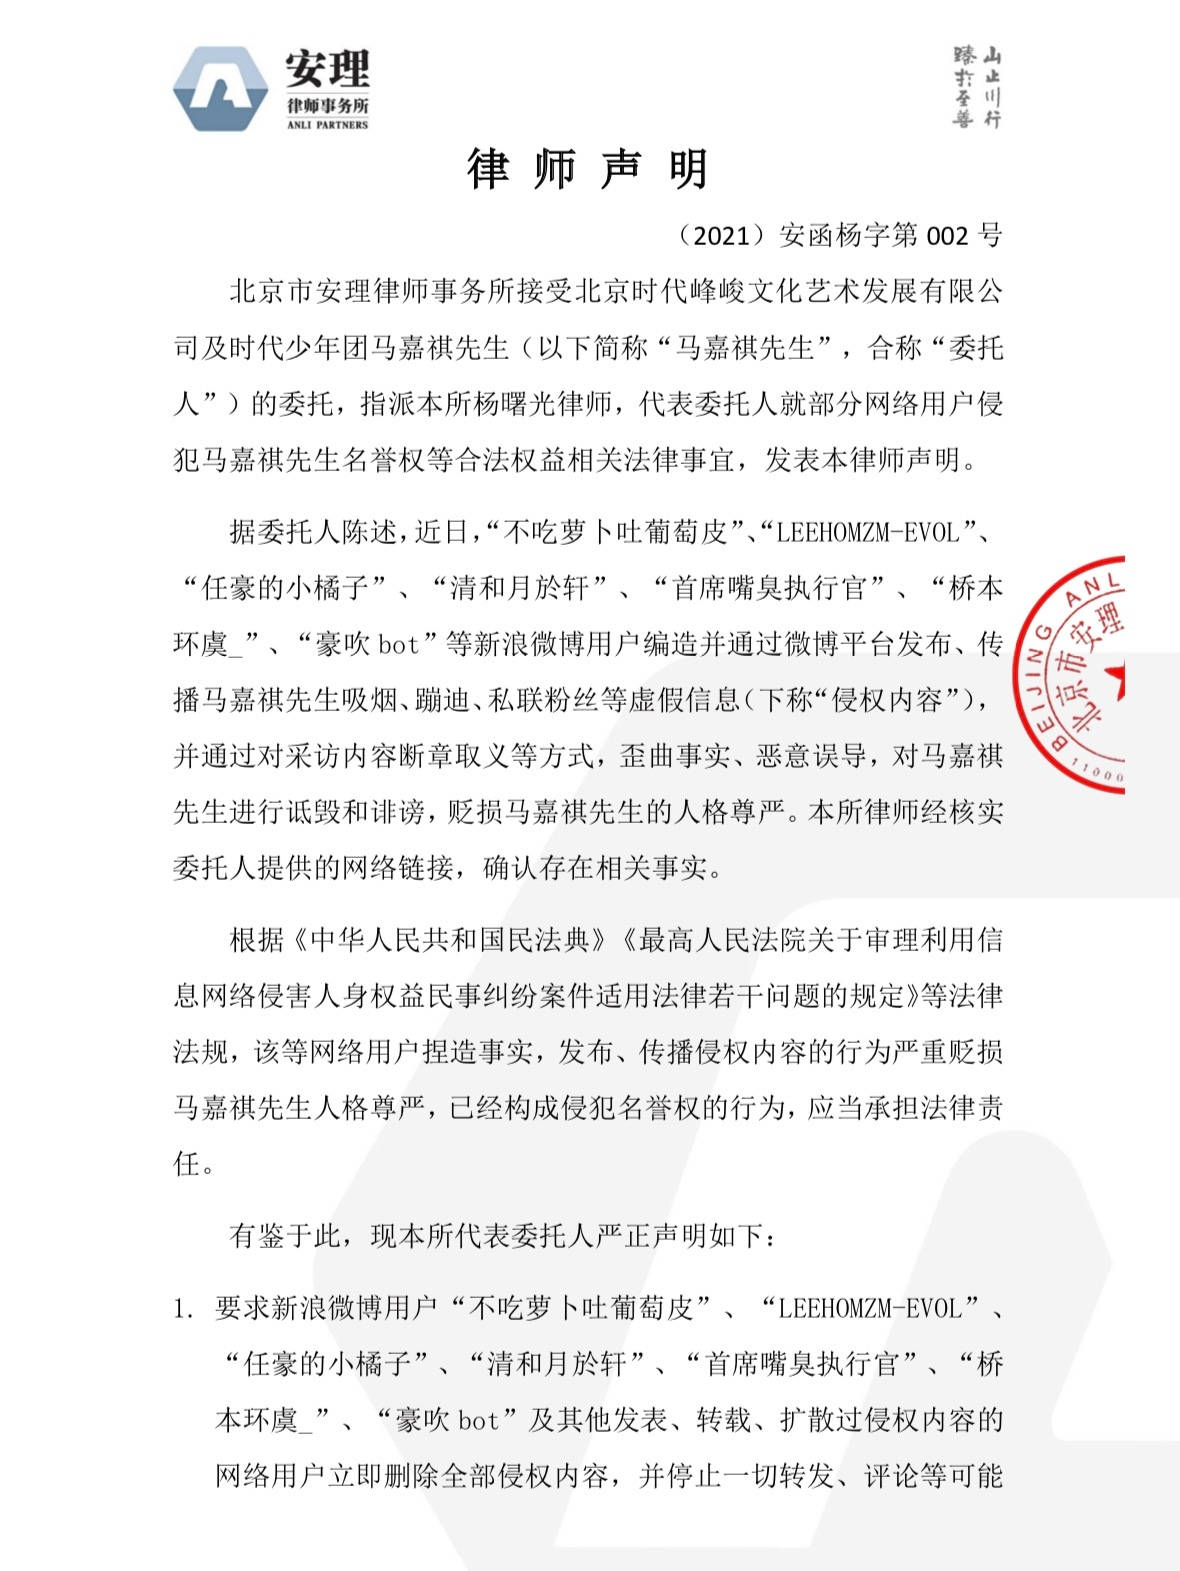 时代峰峻发声明 斥责严浩翔原经纪公司恶意影射与事实不符